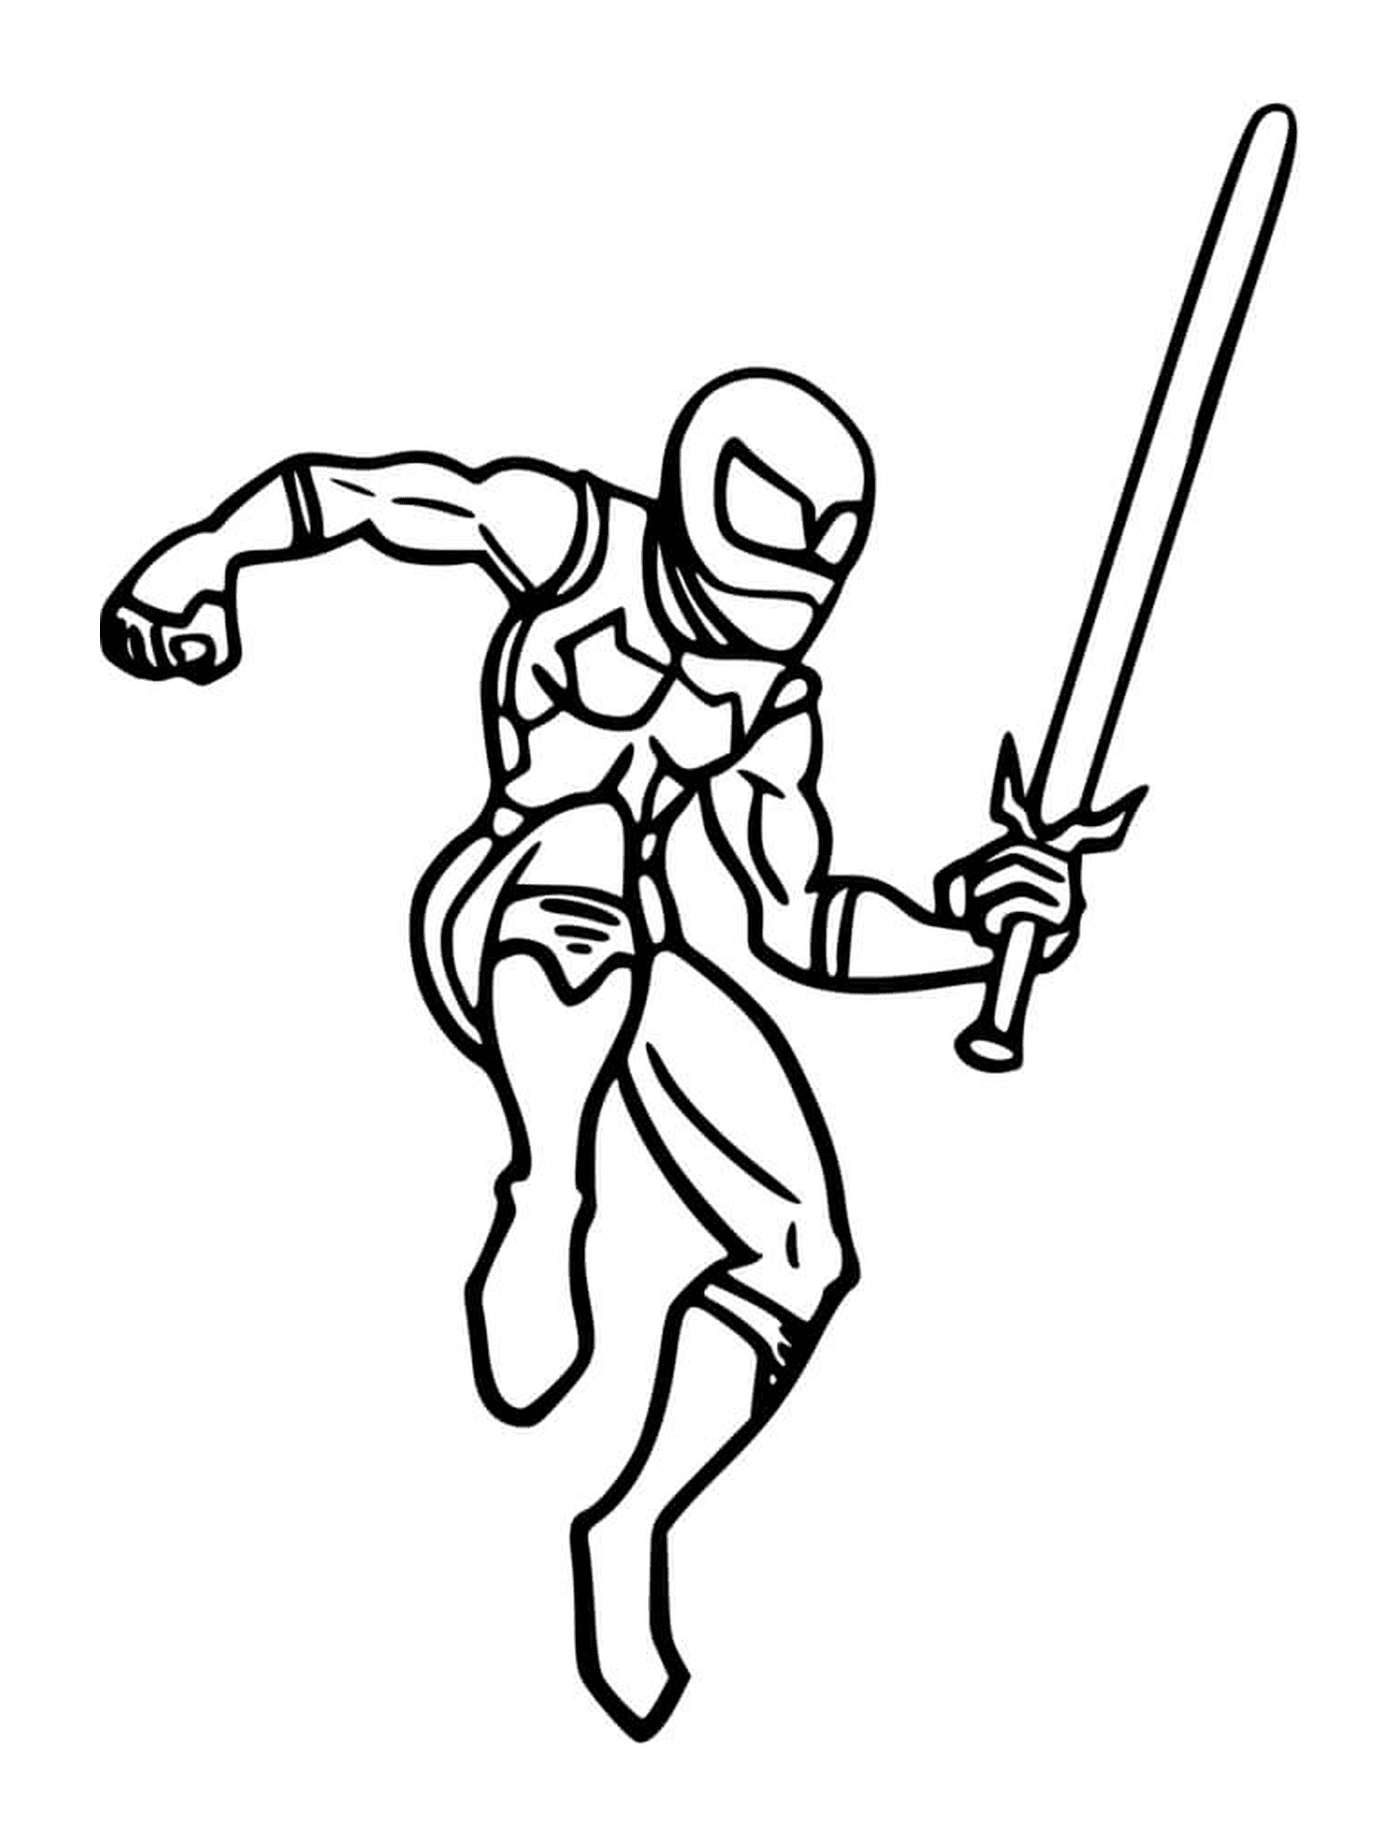  Ninja con una espada 